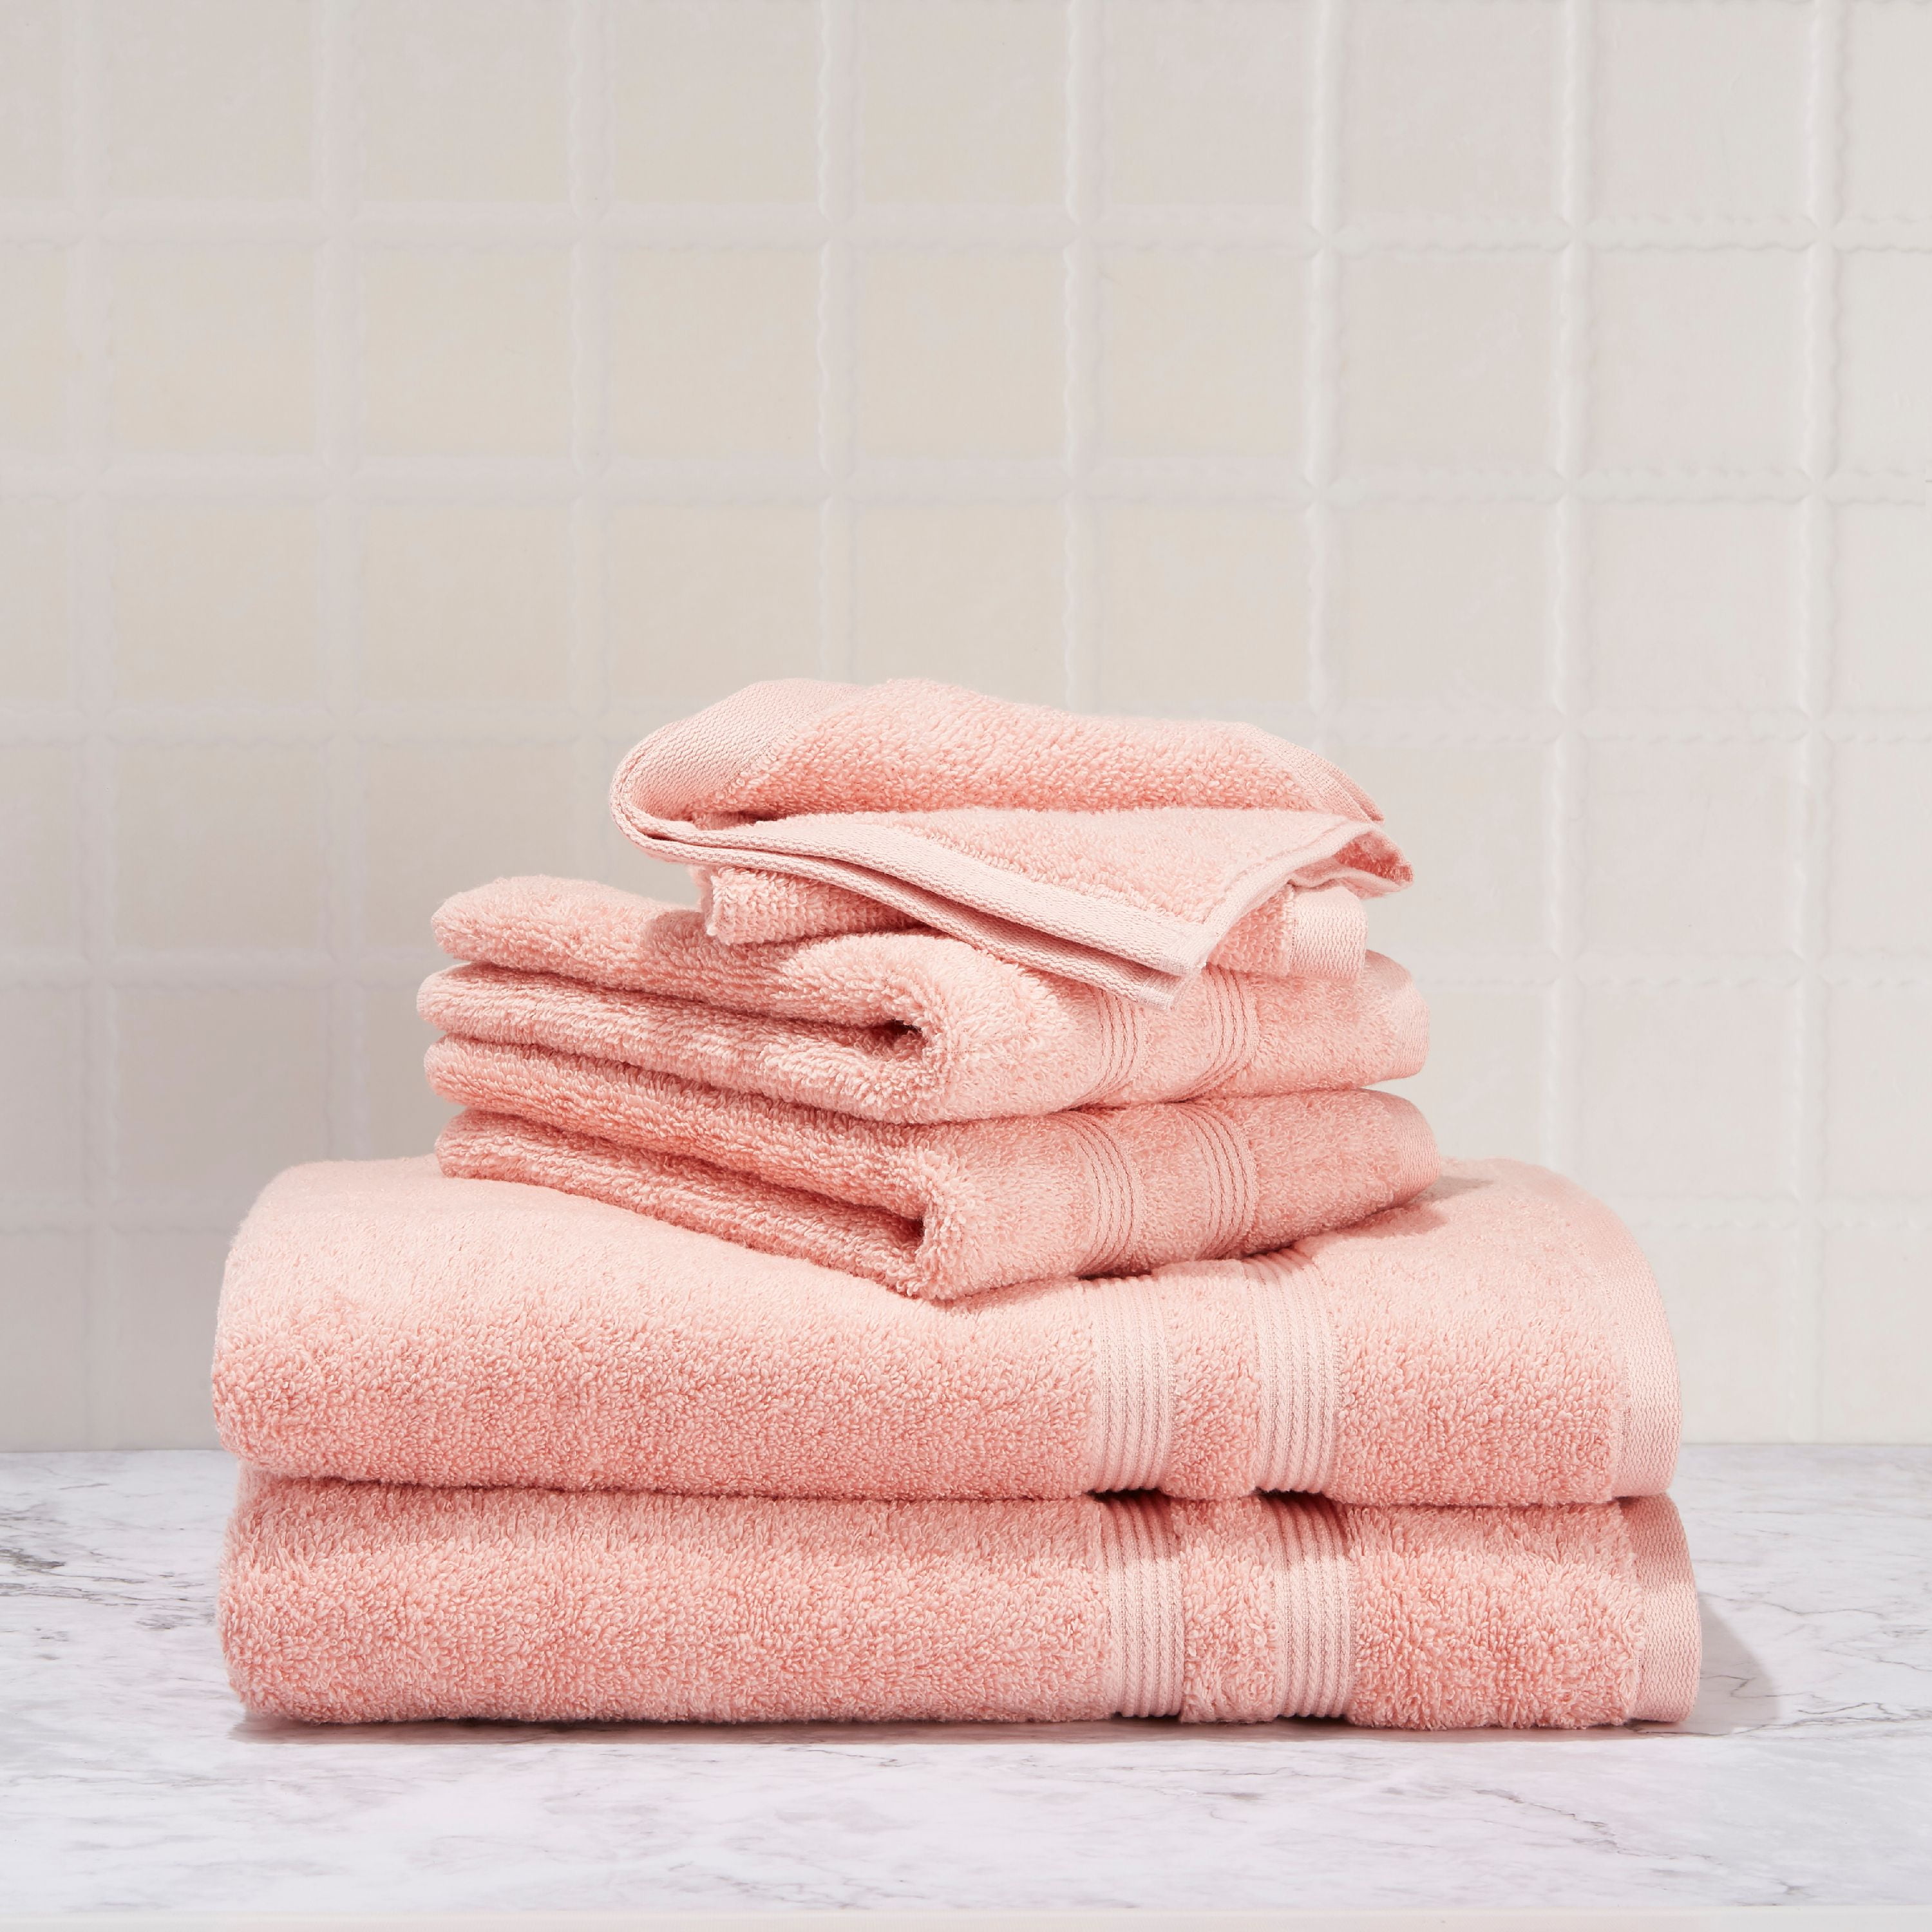 Details about   New Ladies Zone Multi Color Cotton Bath Towels-Set Of 4-udf 